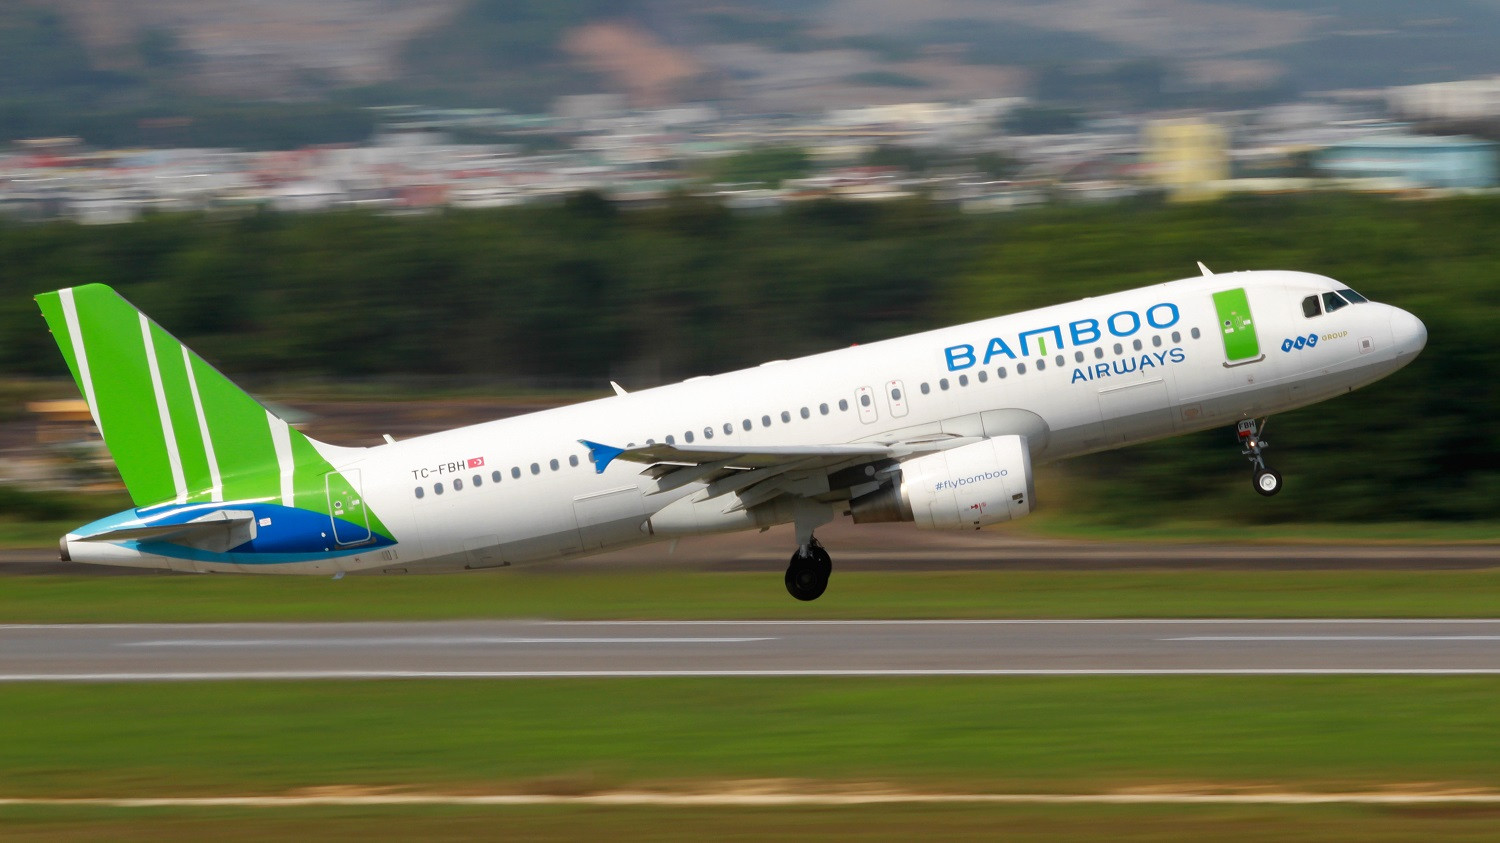 Bamboo Airways tưng bừng ưu đãi vé bay Huế, Chu Lai từ TP. Hồ Chí Minh chỉ từ 49.000 đồng